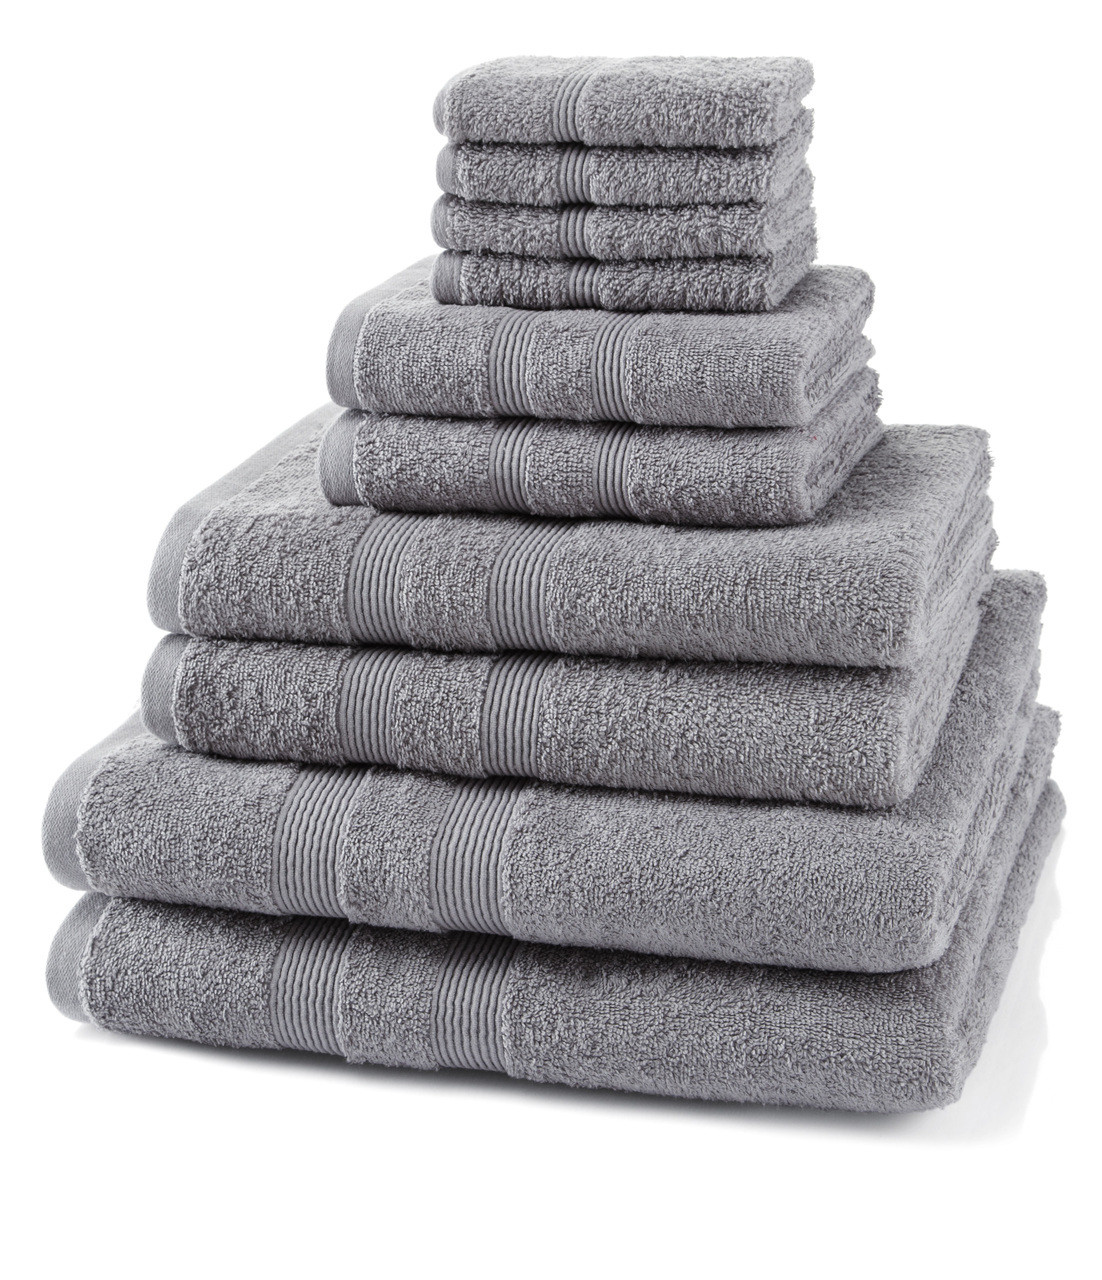 10 Piece 500GSM Towel Bale - 4 Face Cloths, 2 Hand Towels, 2 Bath ...